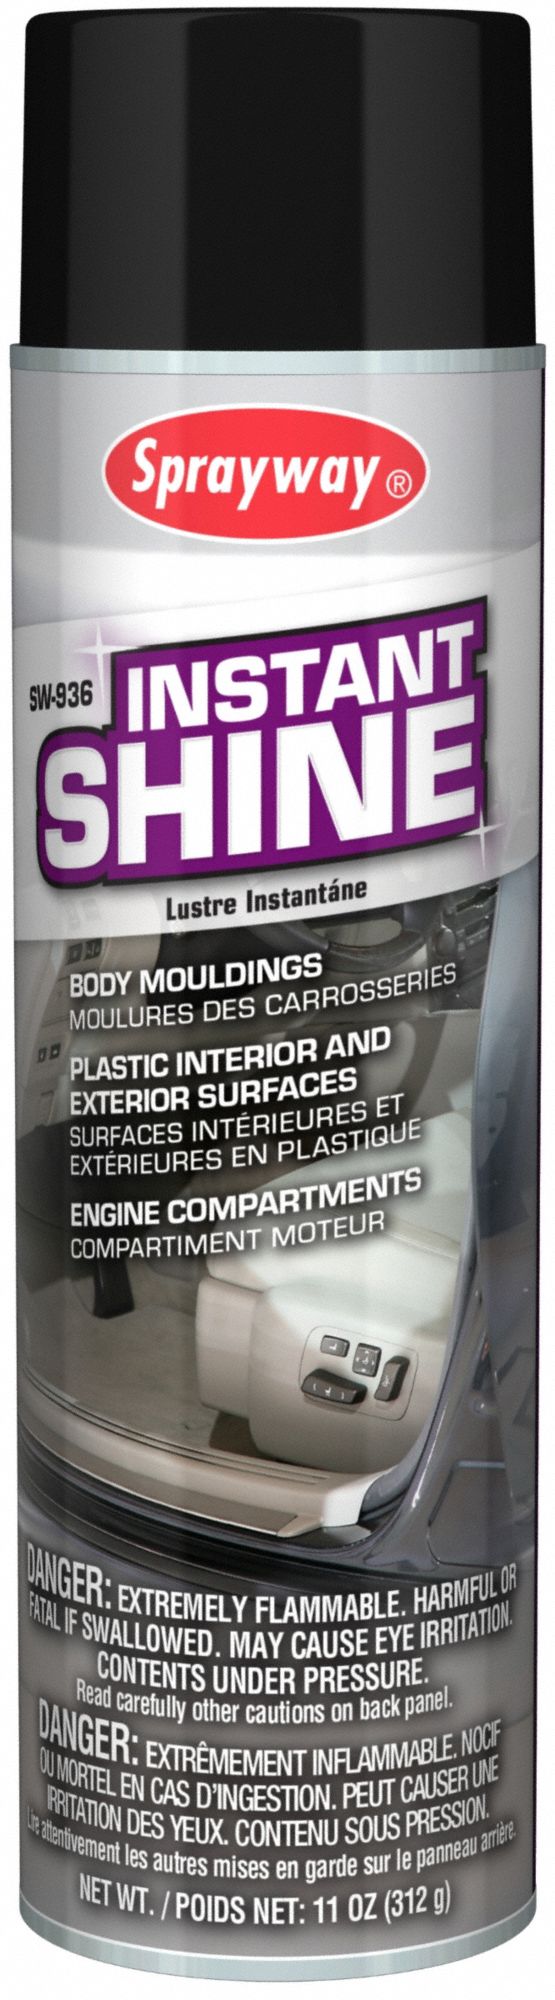 Multi-Purpose Shine: Solvent, Liquid, Exterior/Interior, Can, 20 fl oz Container Size